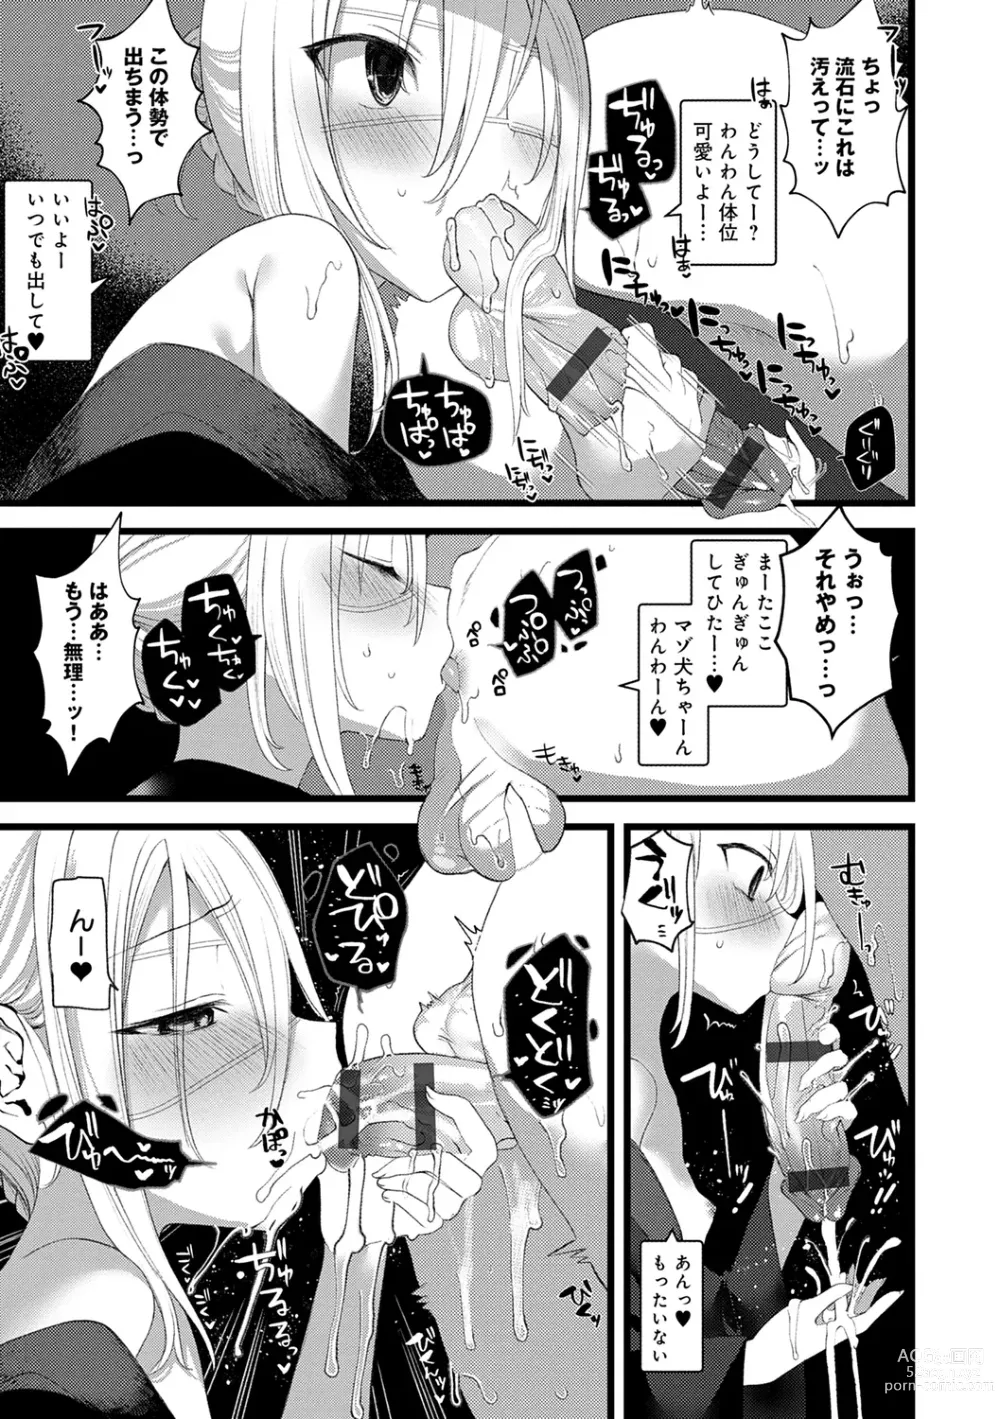 Page 181 of manga Kaiso Ikkenchou -Shonen Kaiki Inwashuu-